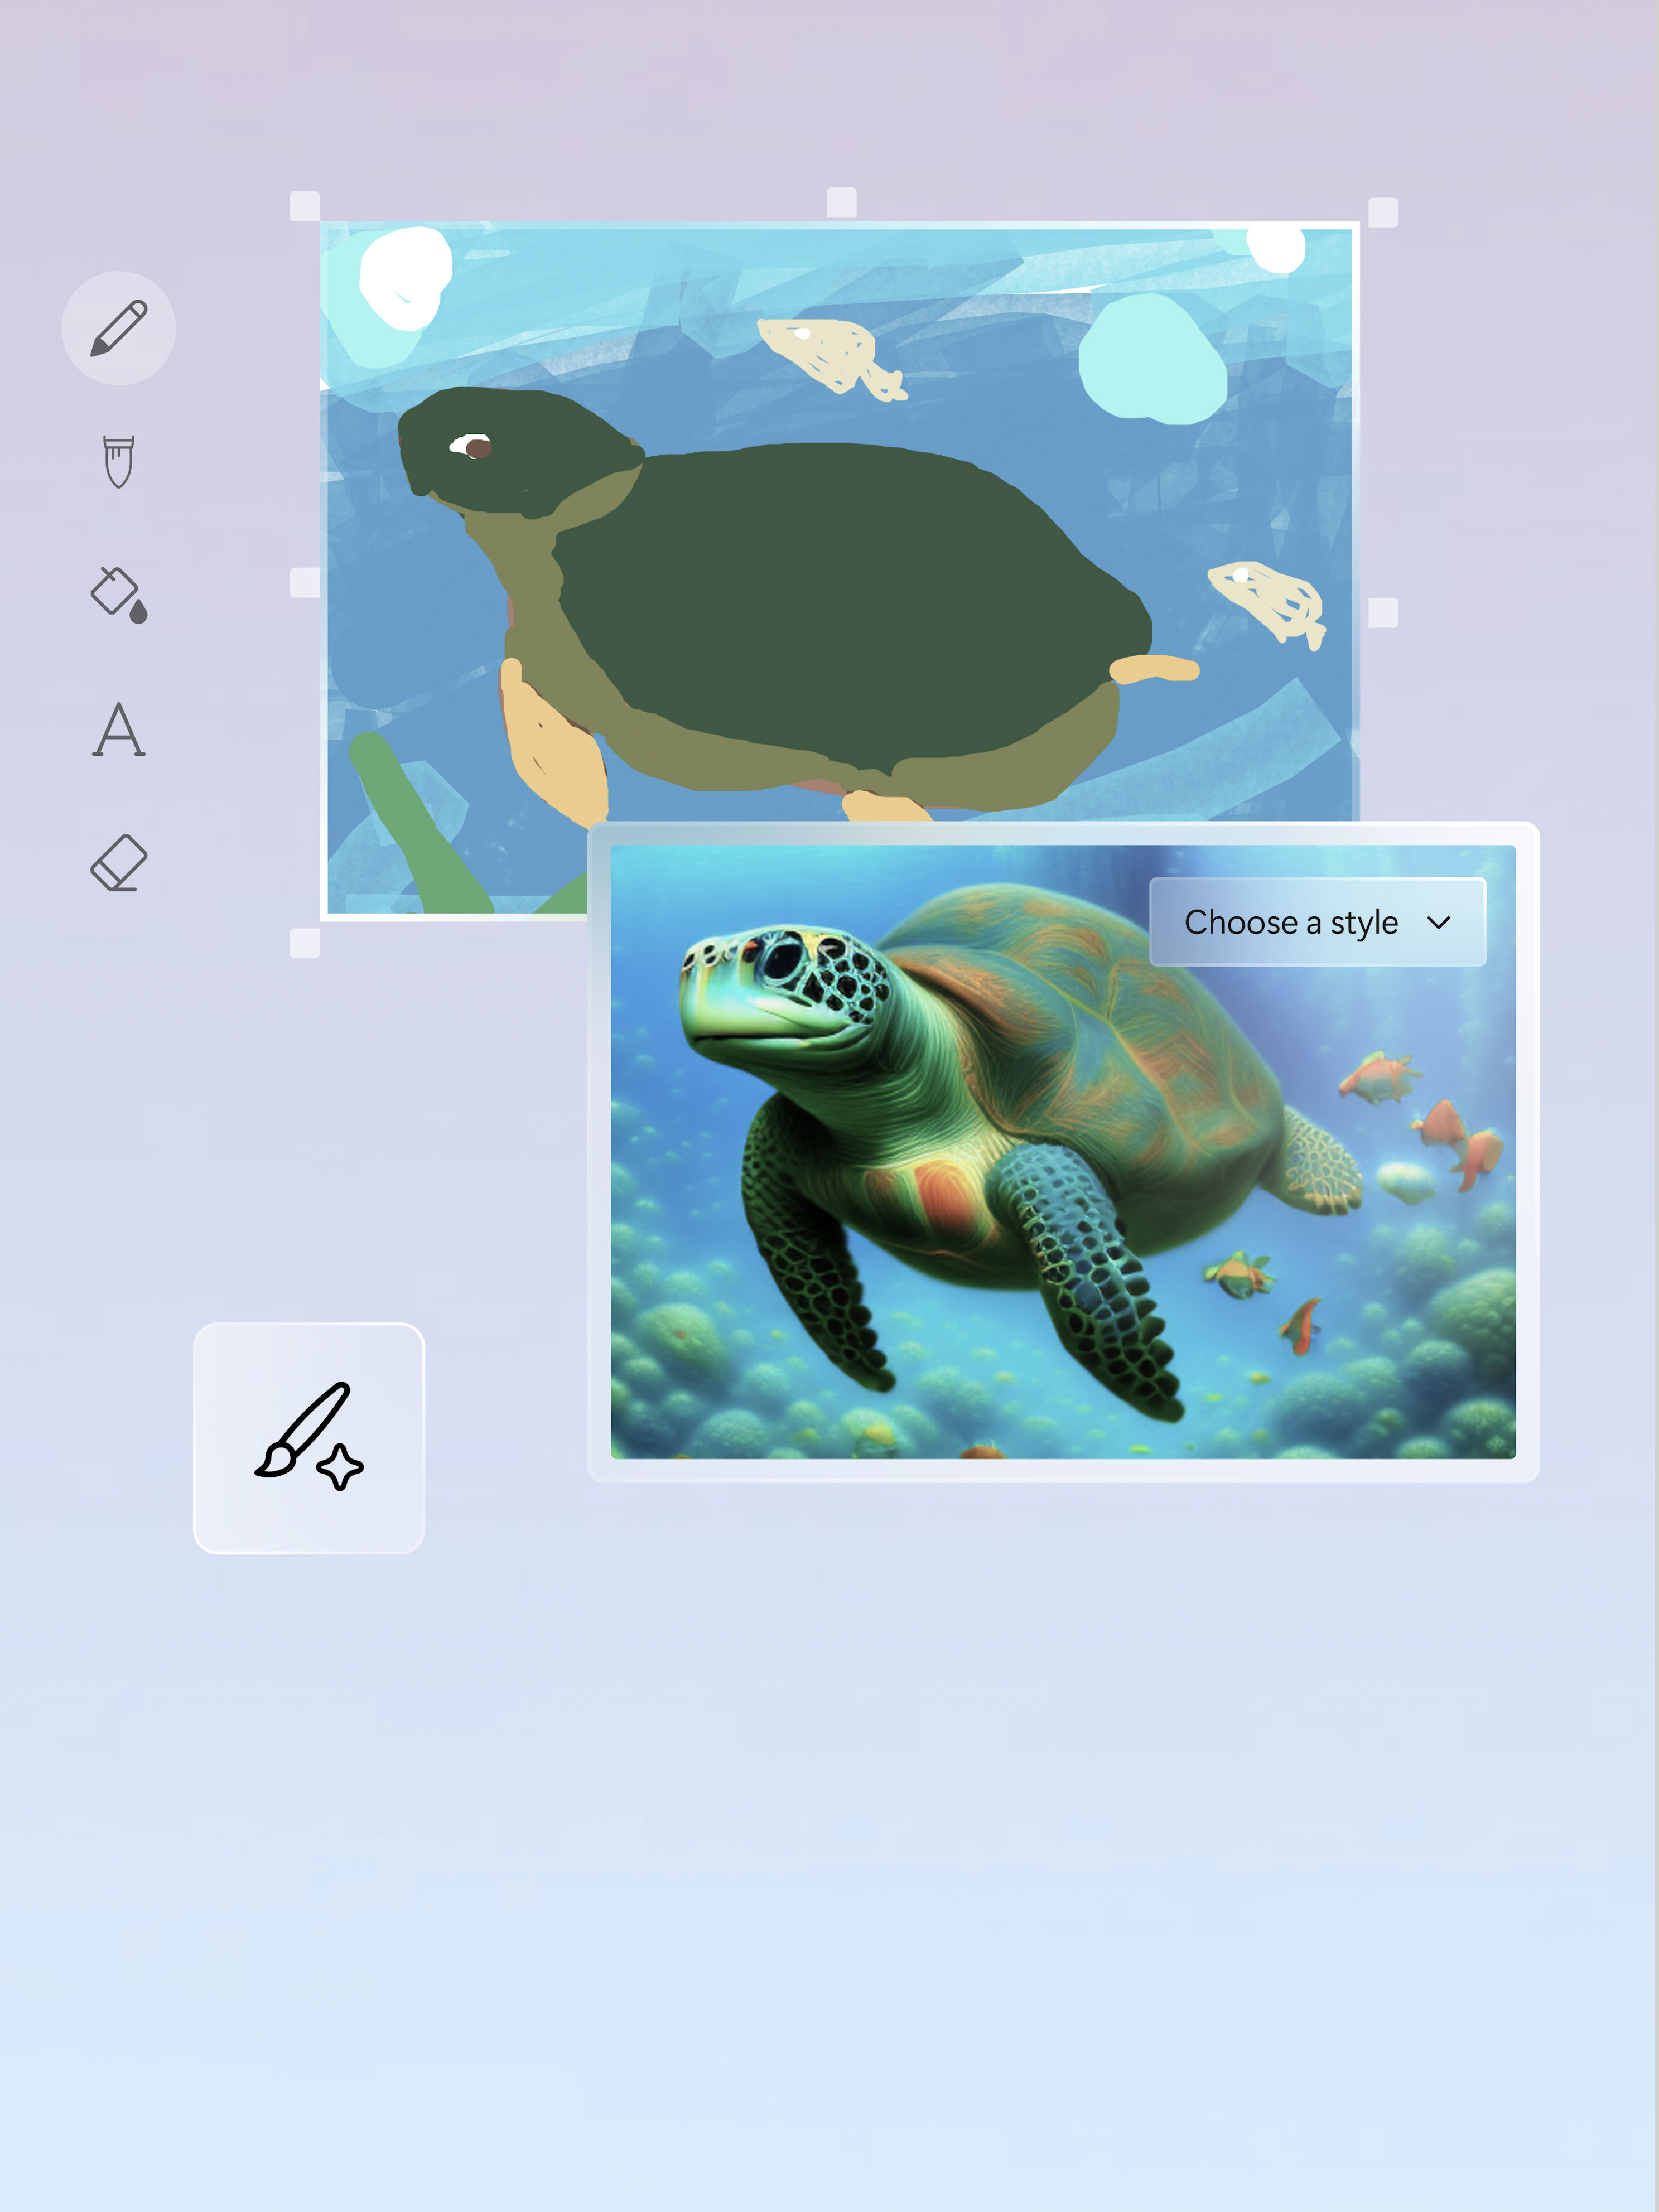 Künstlerische Gestaltung und Bild einer Schildkröte